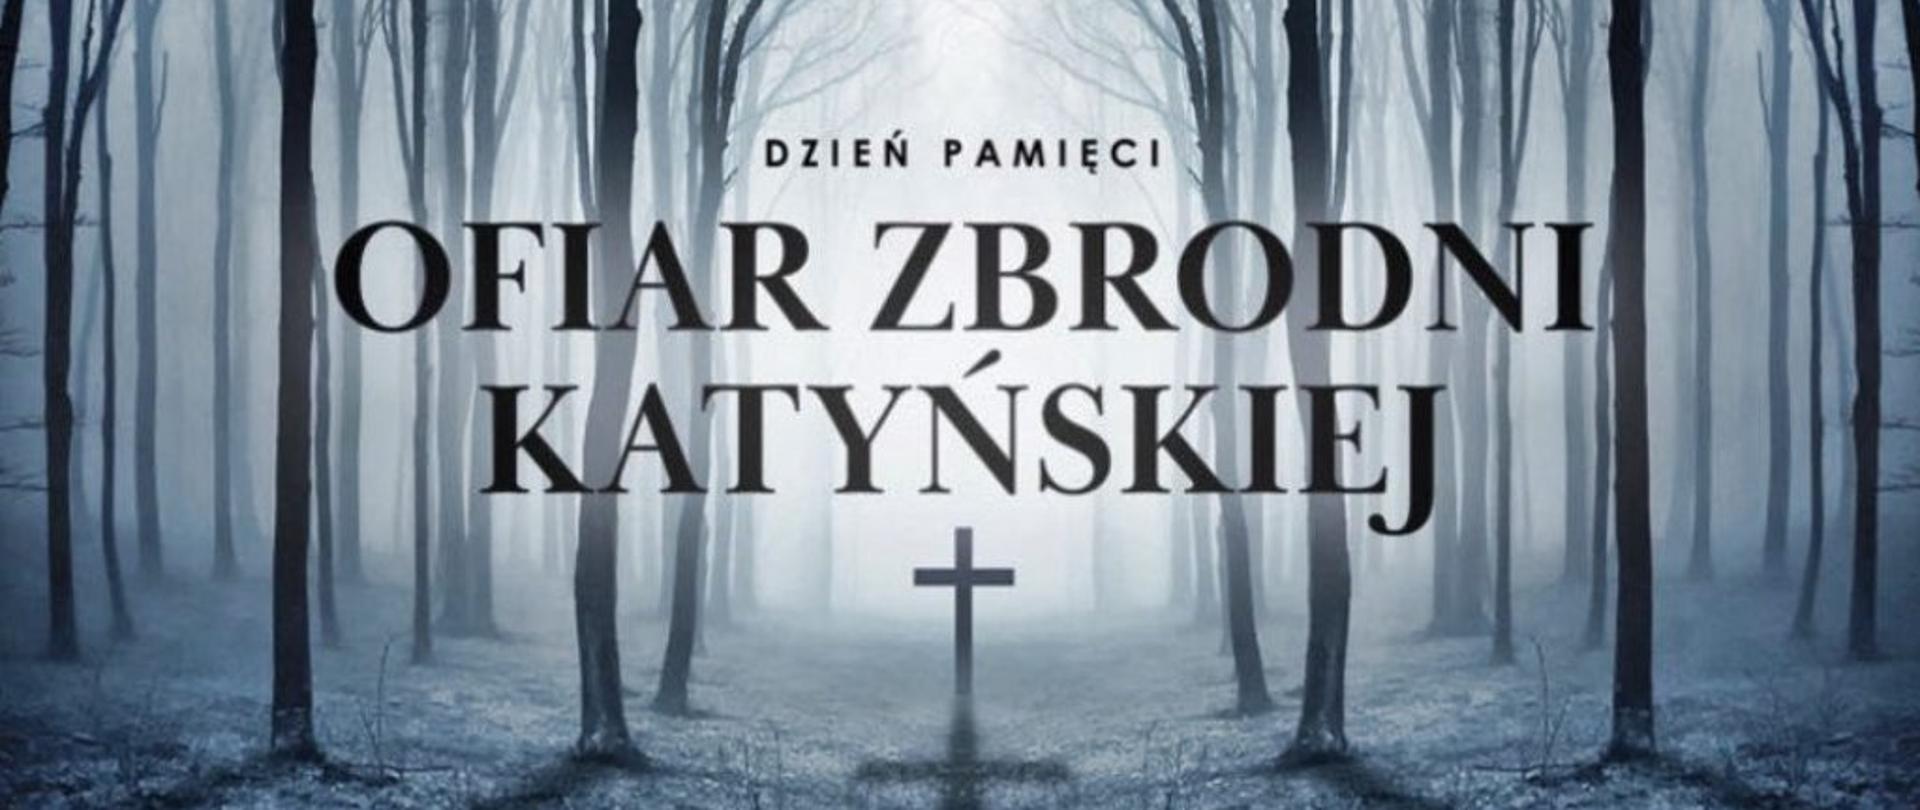 Las za mgłą, pośrodku krzyż. W środkowej części obrazu czarny napis: Dzień Pamięci Ofiar Zbrodni Katyńskiej.